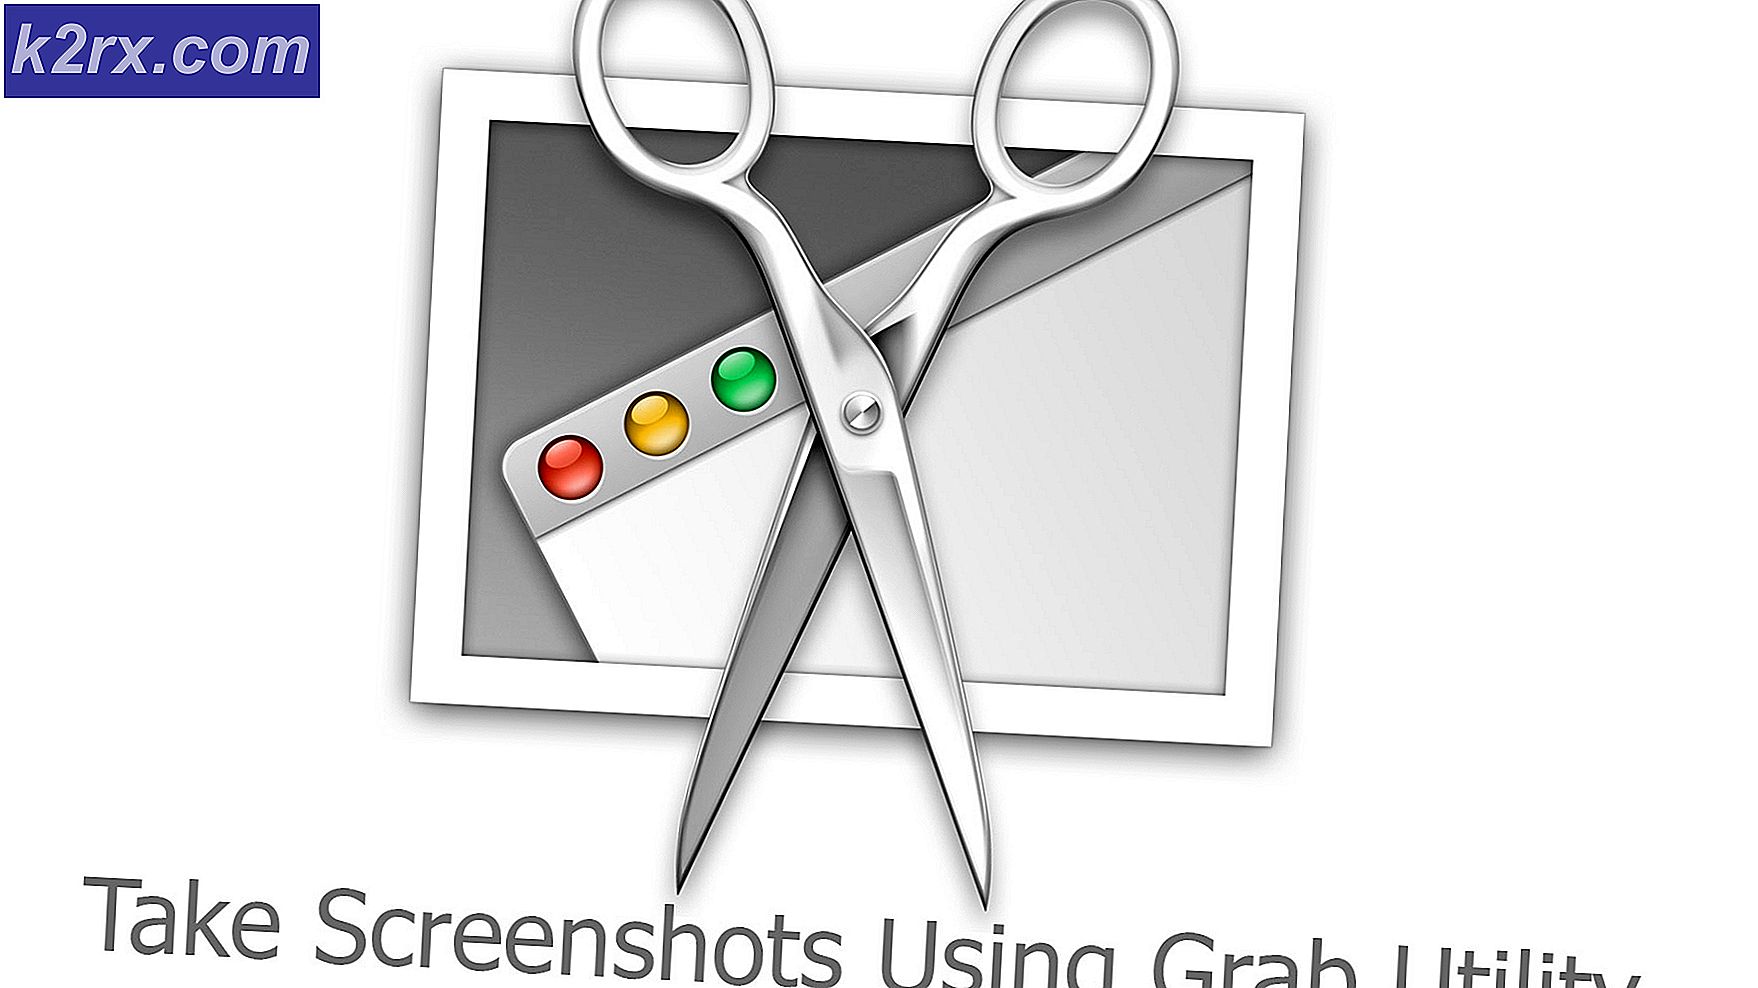 Så här tar du skärmdumpar på MacOS och Mac OS X med Grab Utility